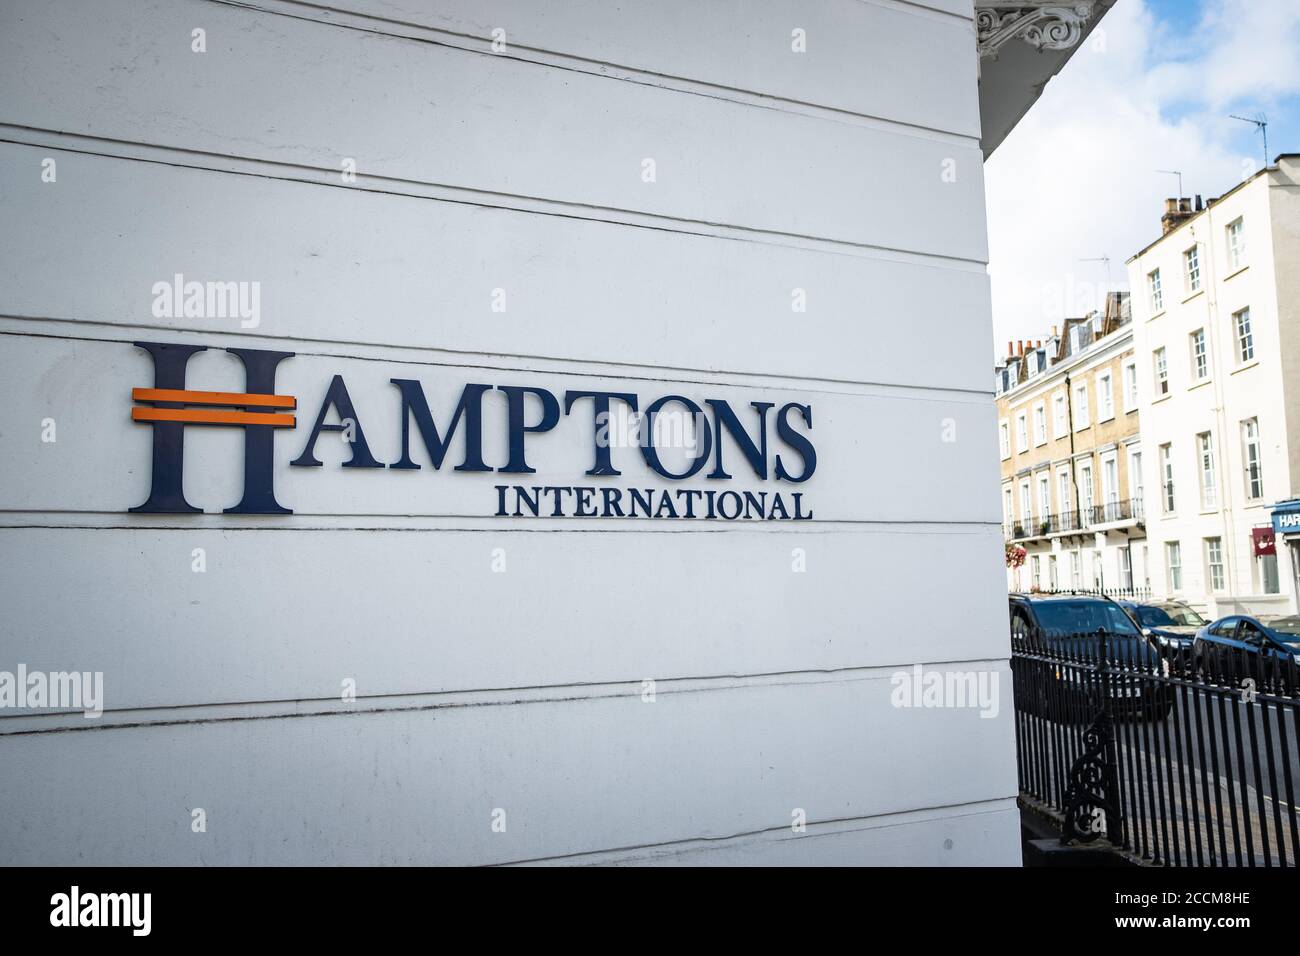 Londres- Hamptons agentes inmobiliarios internacionales en Pimlico, SW1 Foto de stock